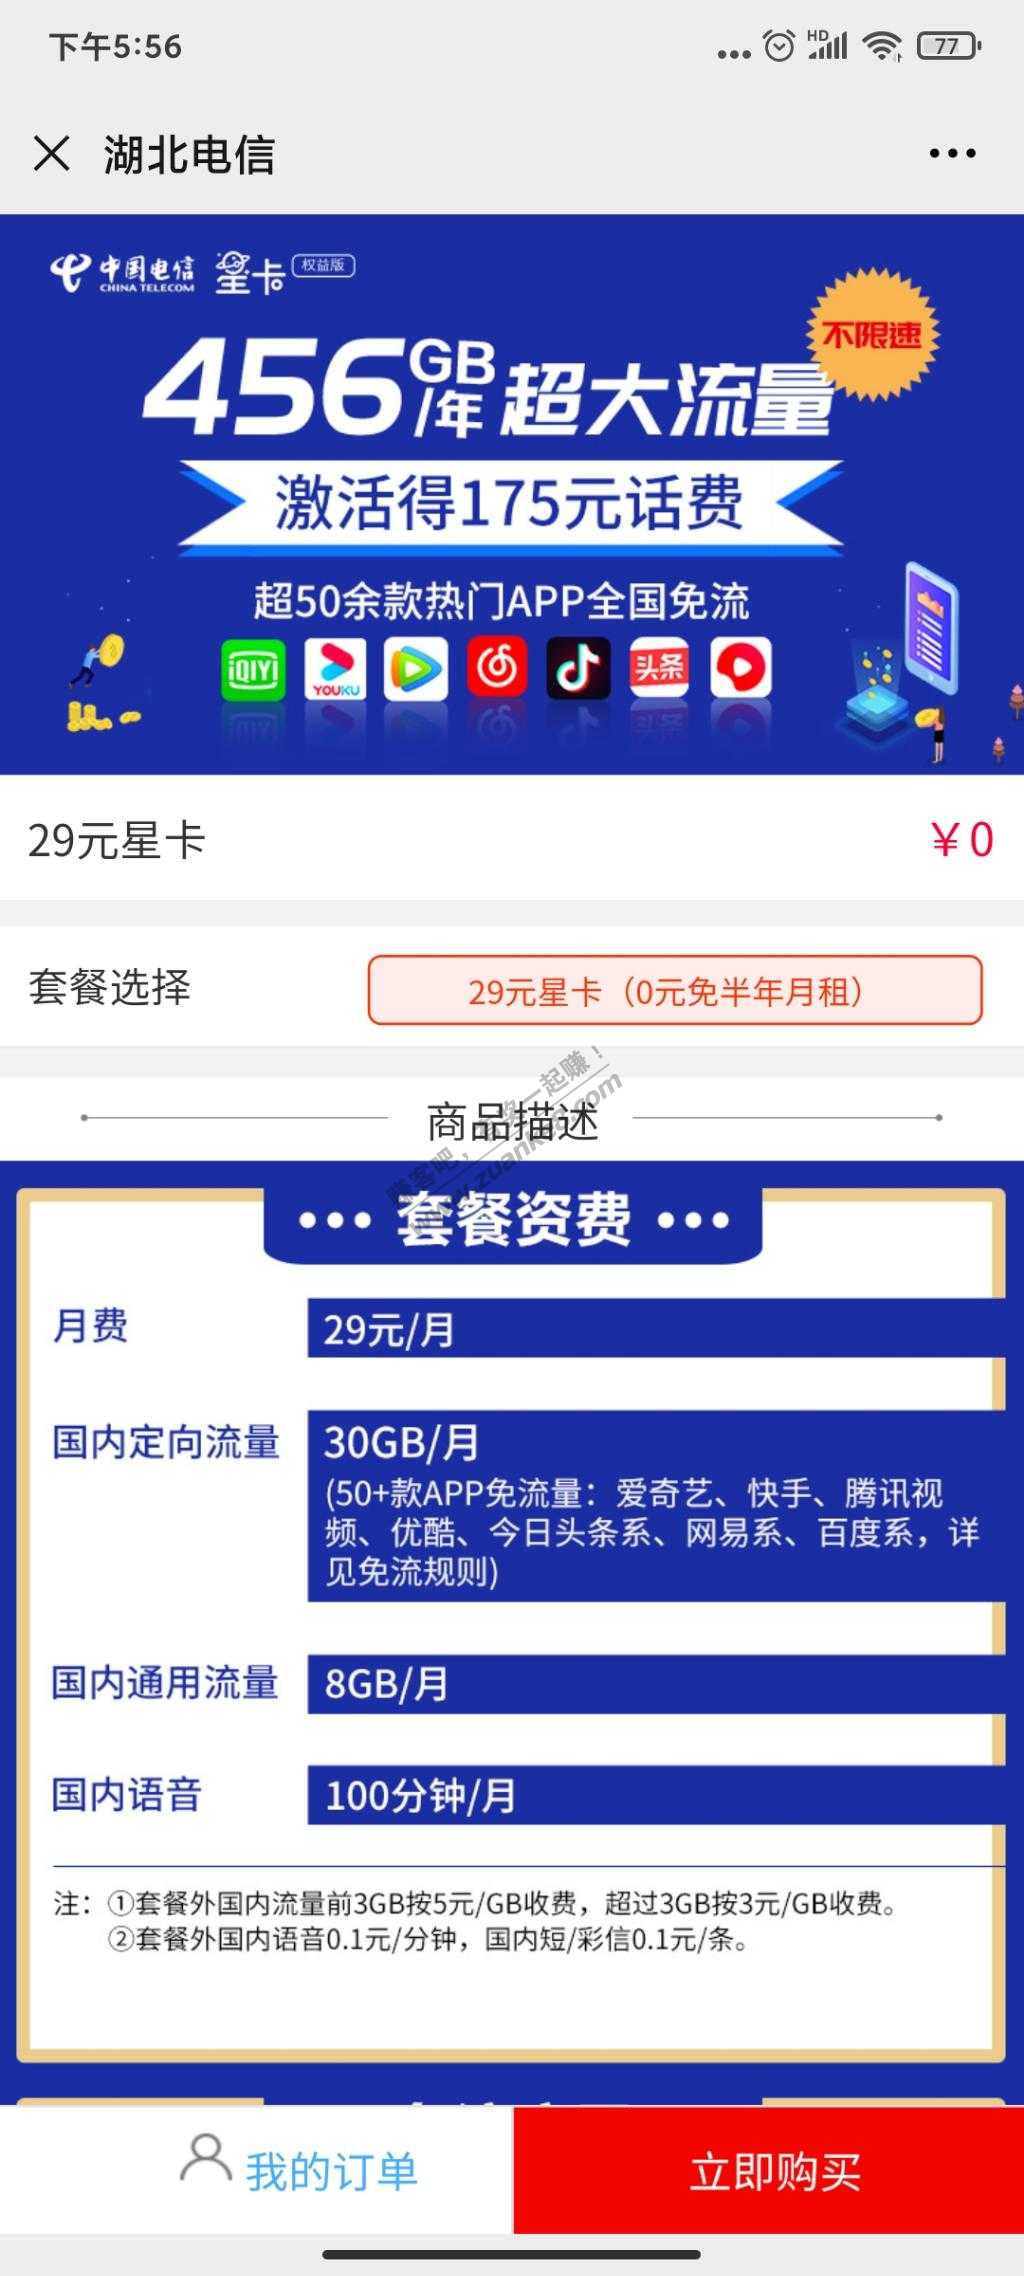 新电话卡-如何买各平台新人套餐-惠小助(52huixz.com)